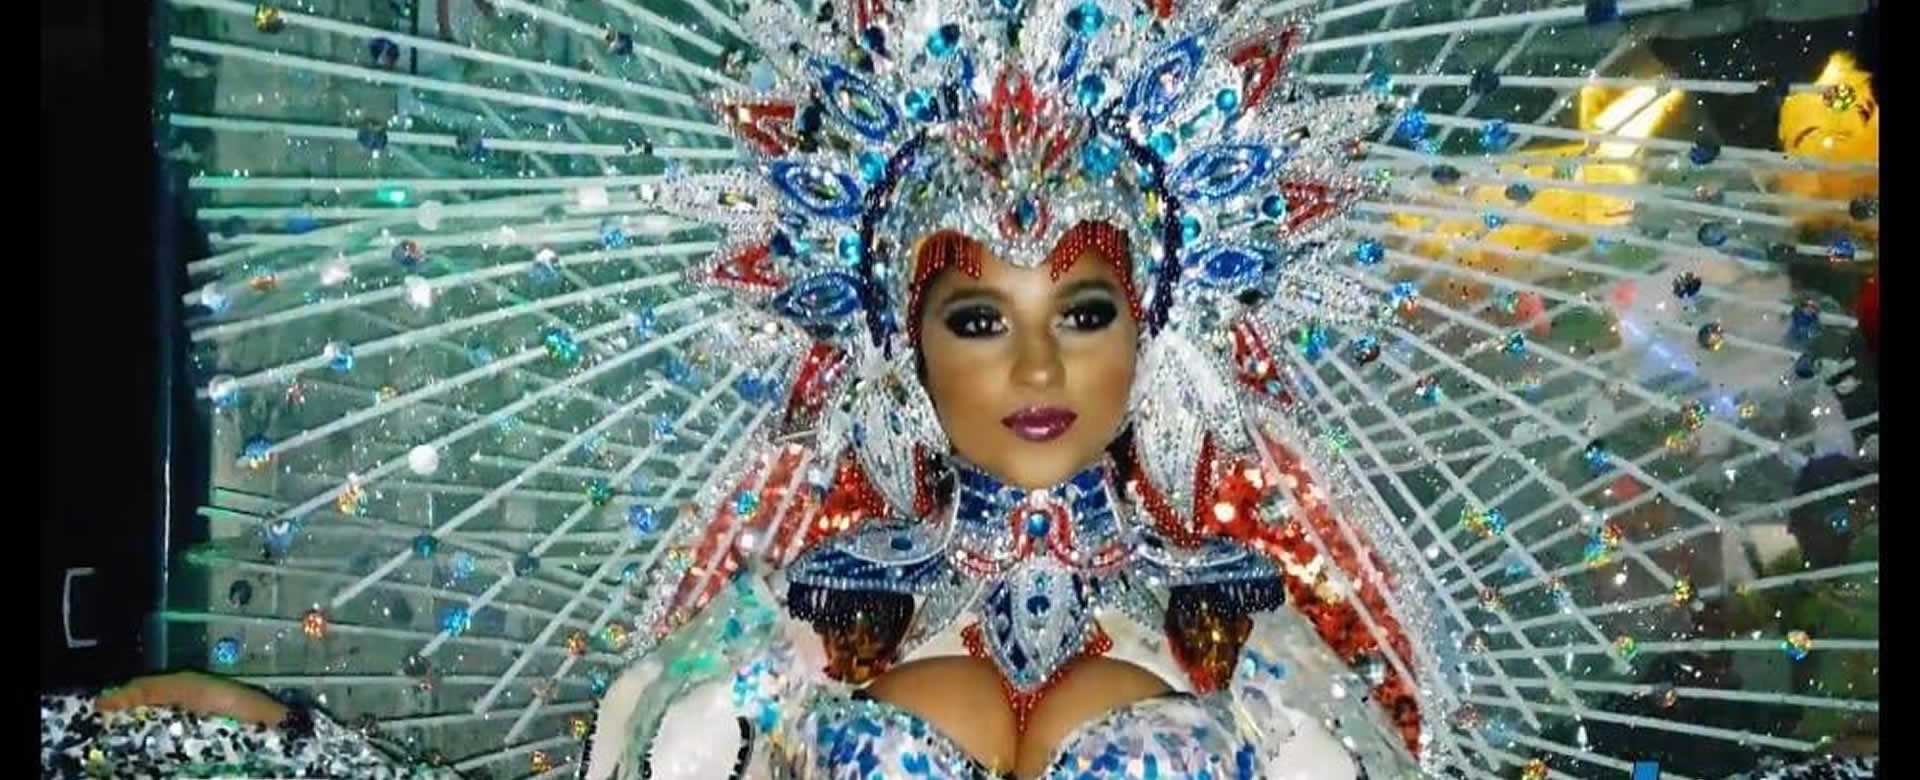 Rumores sobre el certamen de Reinas en el Carnaval Alegría por la Vida